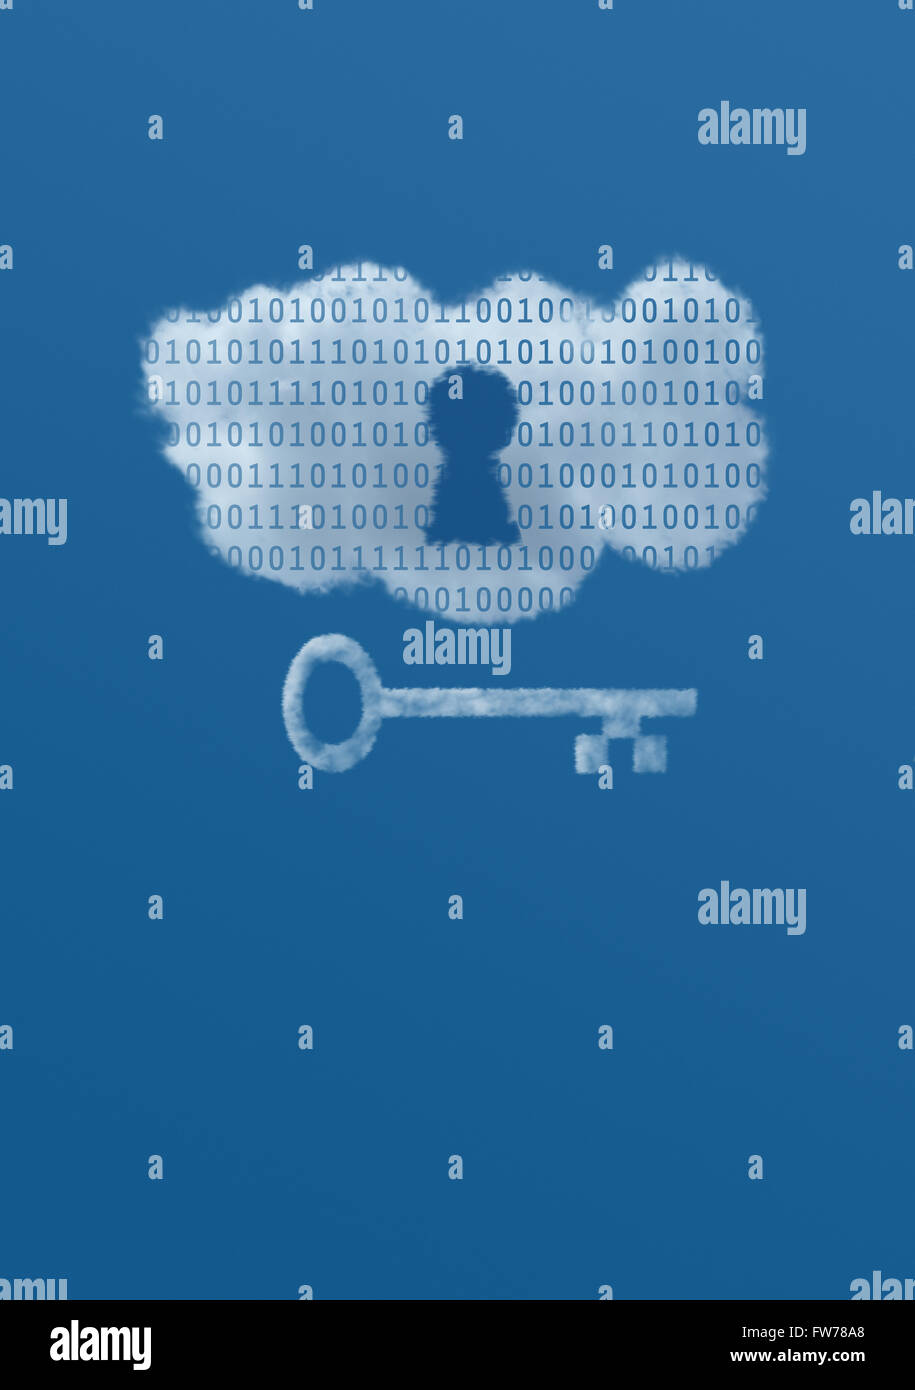 Eine weiße Wolke mit binären Daten in einen blauen Himmel hat ein Schlüsselloch und Schlüssel zur Veranschaulichung der Idee der Datensicherheit in der Cloud. Stockfoto